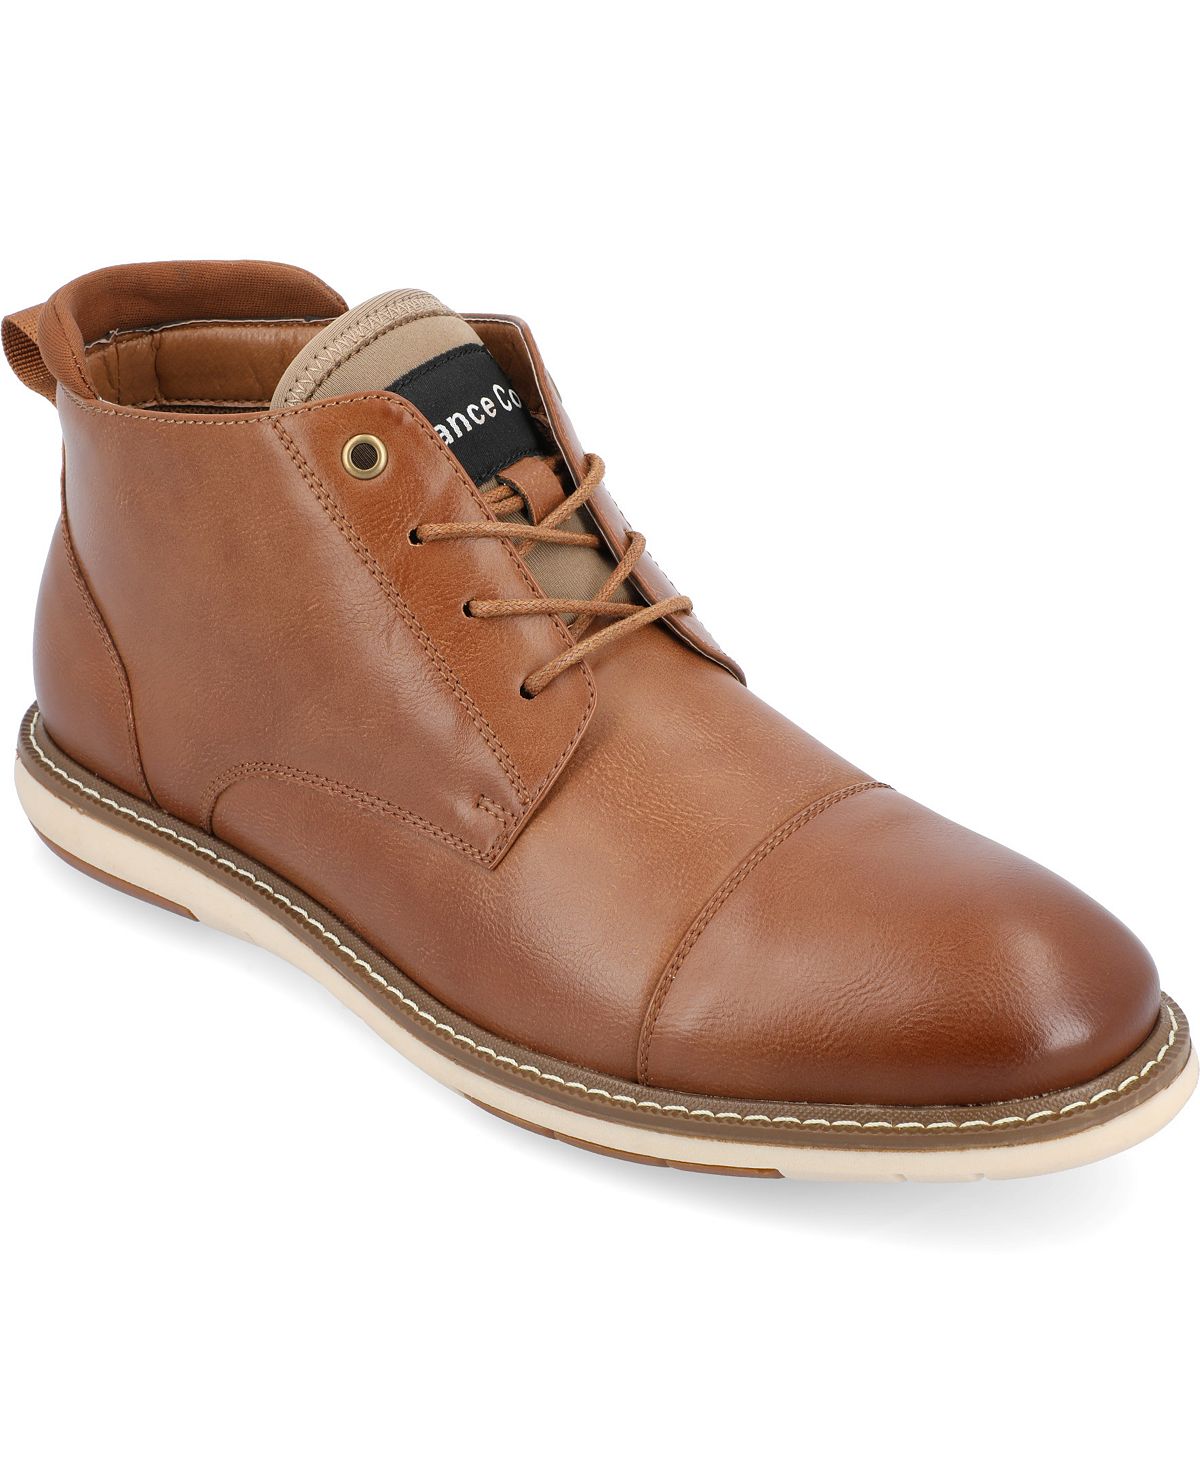 Мужские ботинки Chukka Redford Tru Comfort из пеноматериала со шнуровкой и носком Vance Co.